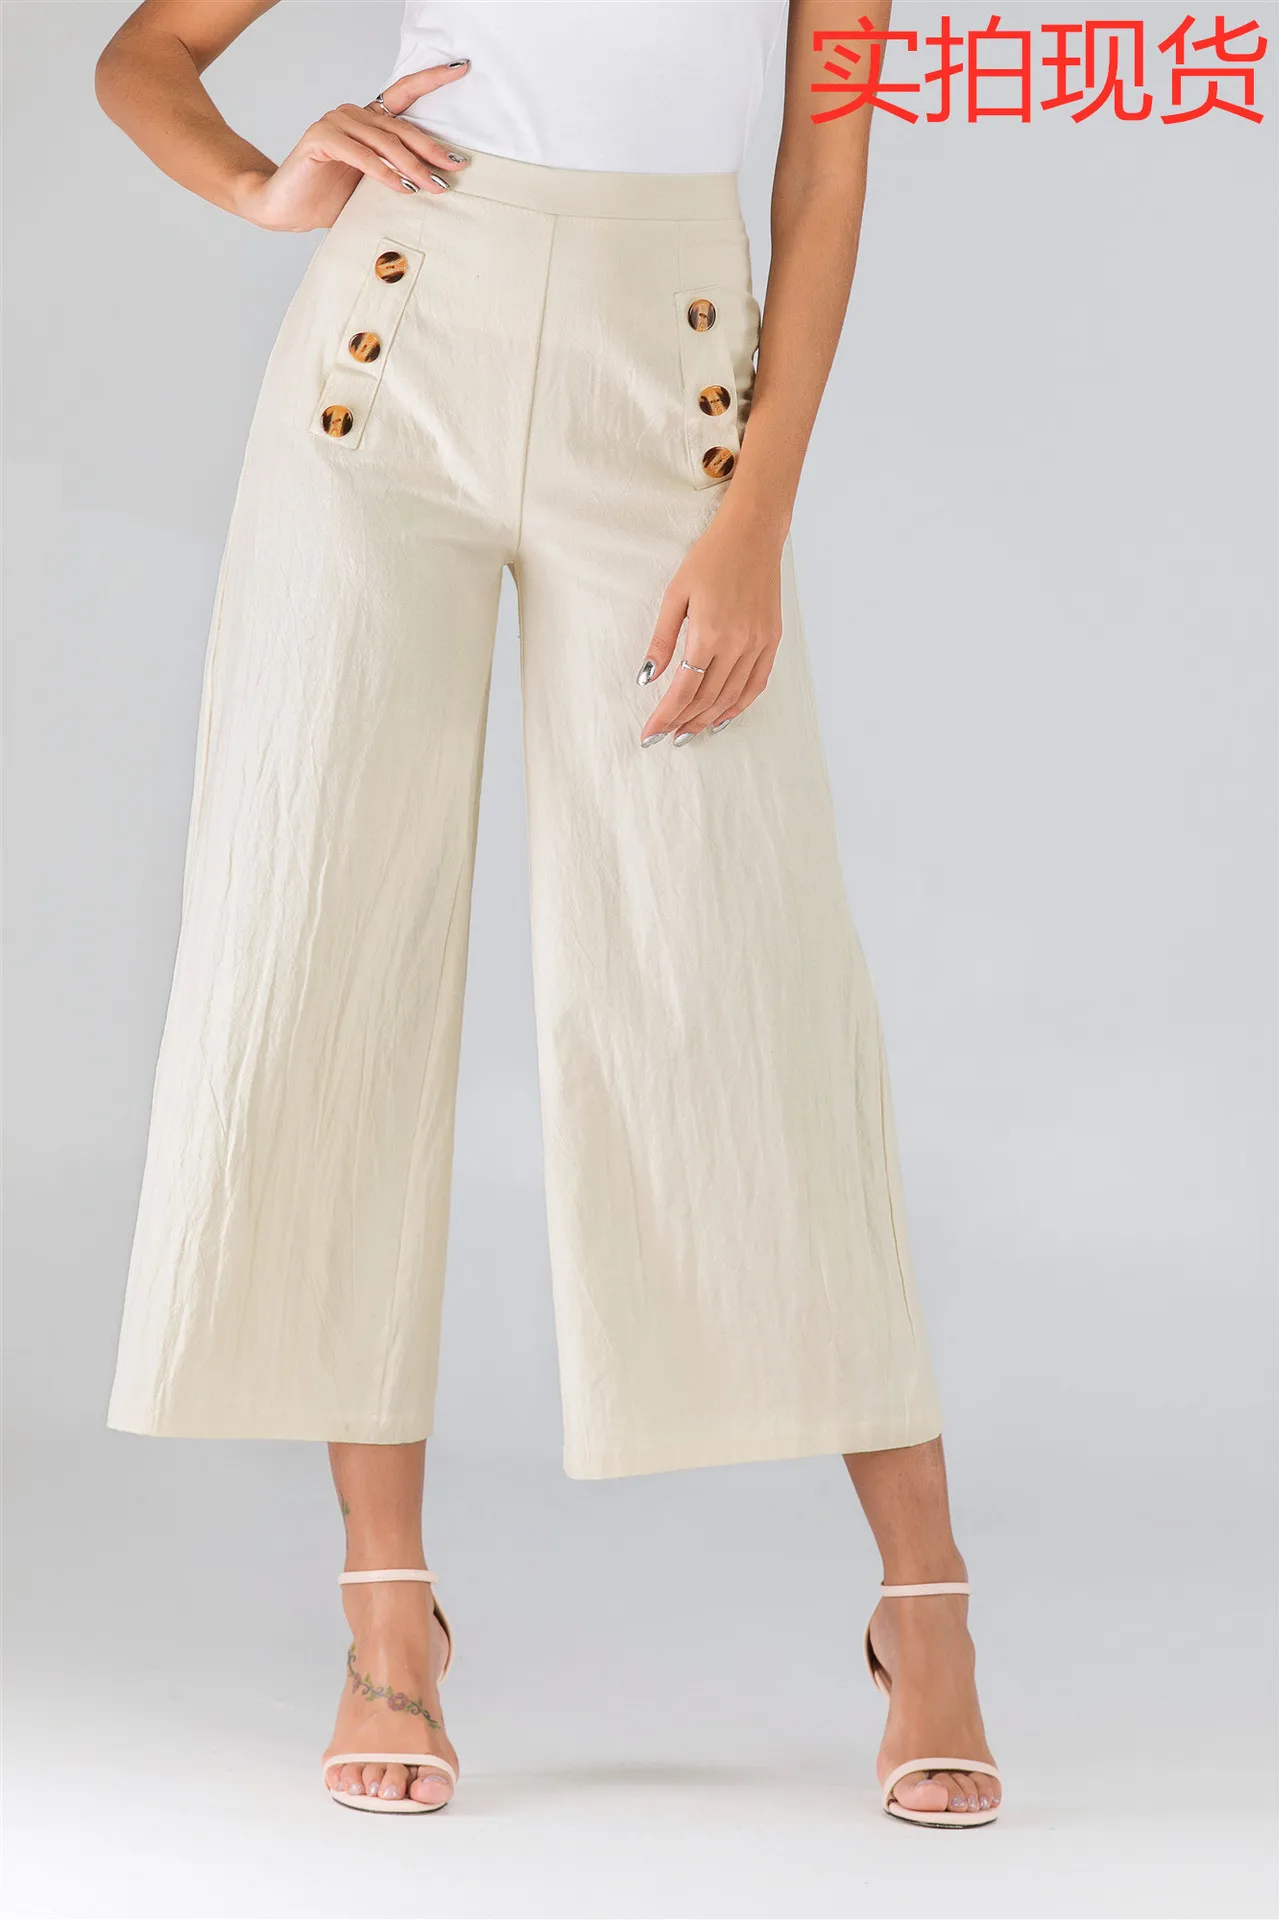 2019 Aliexpress Amazon осень хит продаж женское платье модные повседневные штаны для стройных Fit Свободные Штаны Брюки